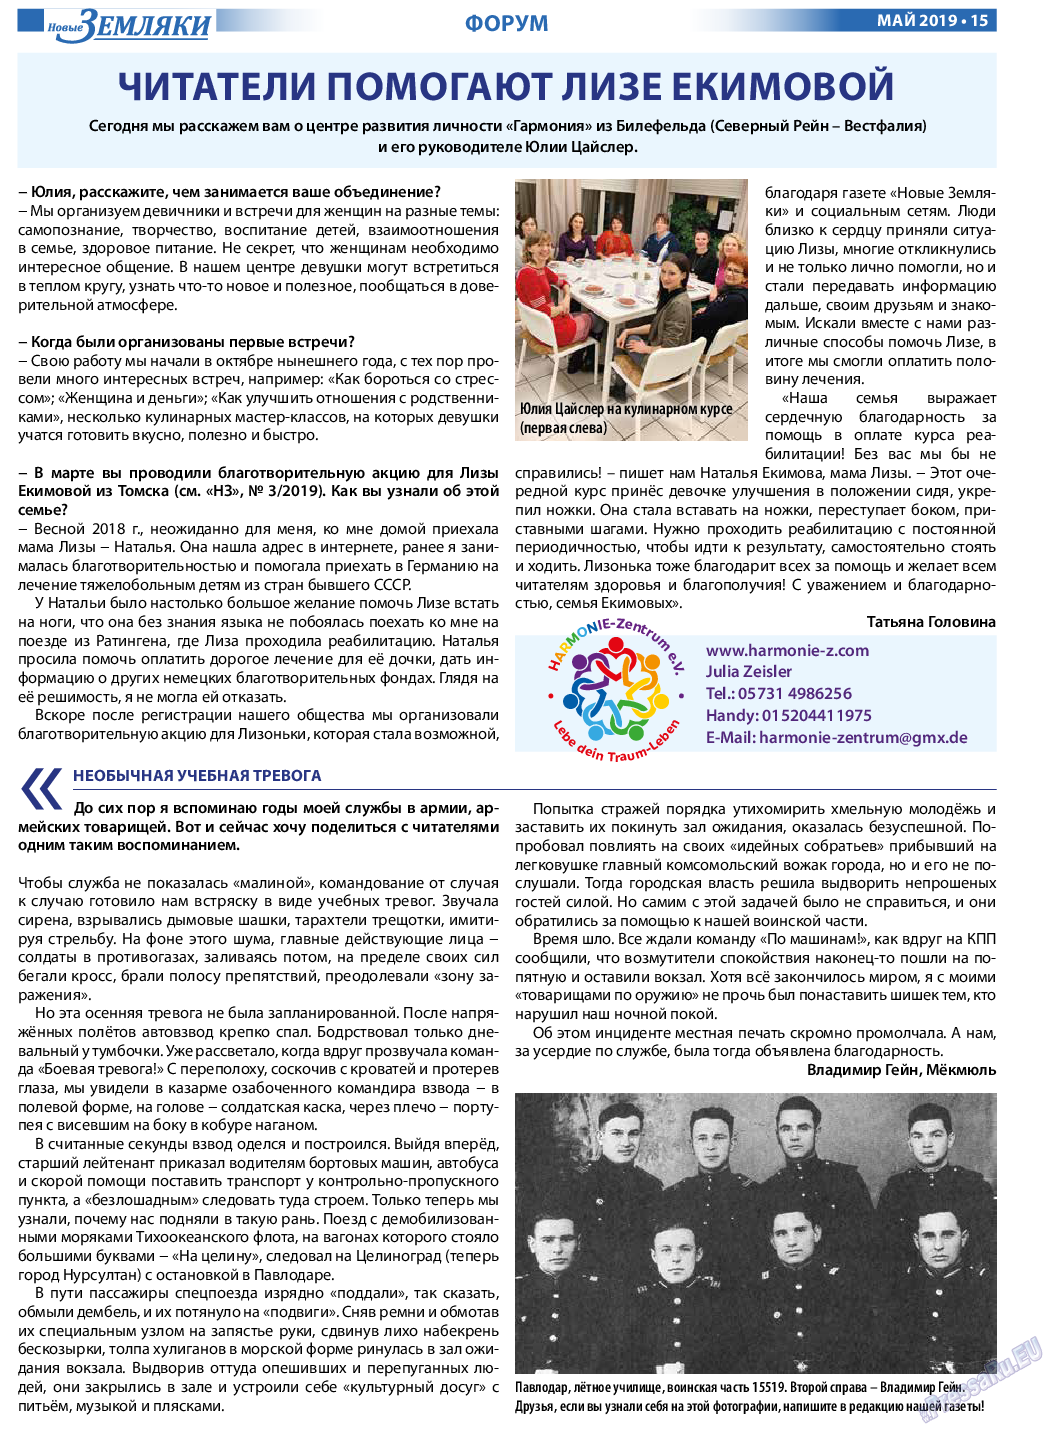 Новые Земляки, газета. 2019 №5 стр.15